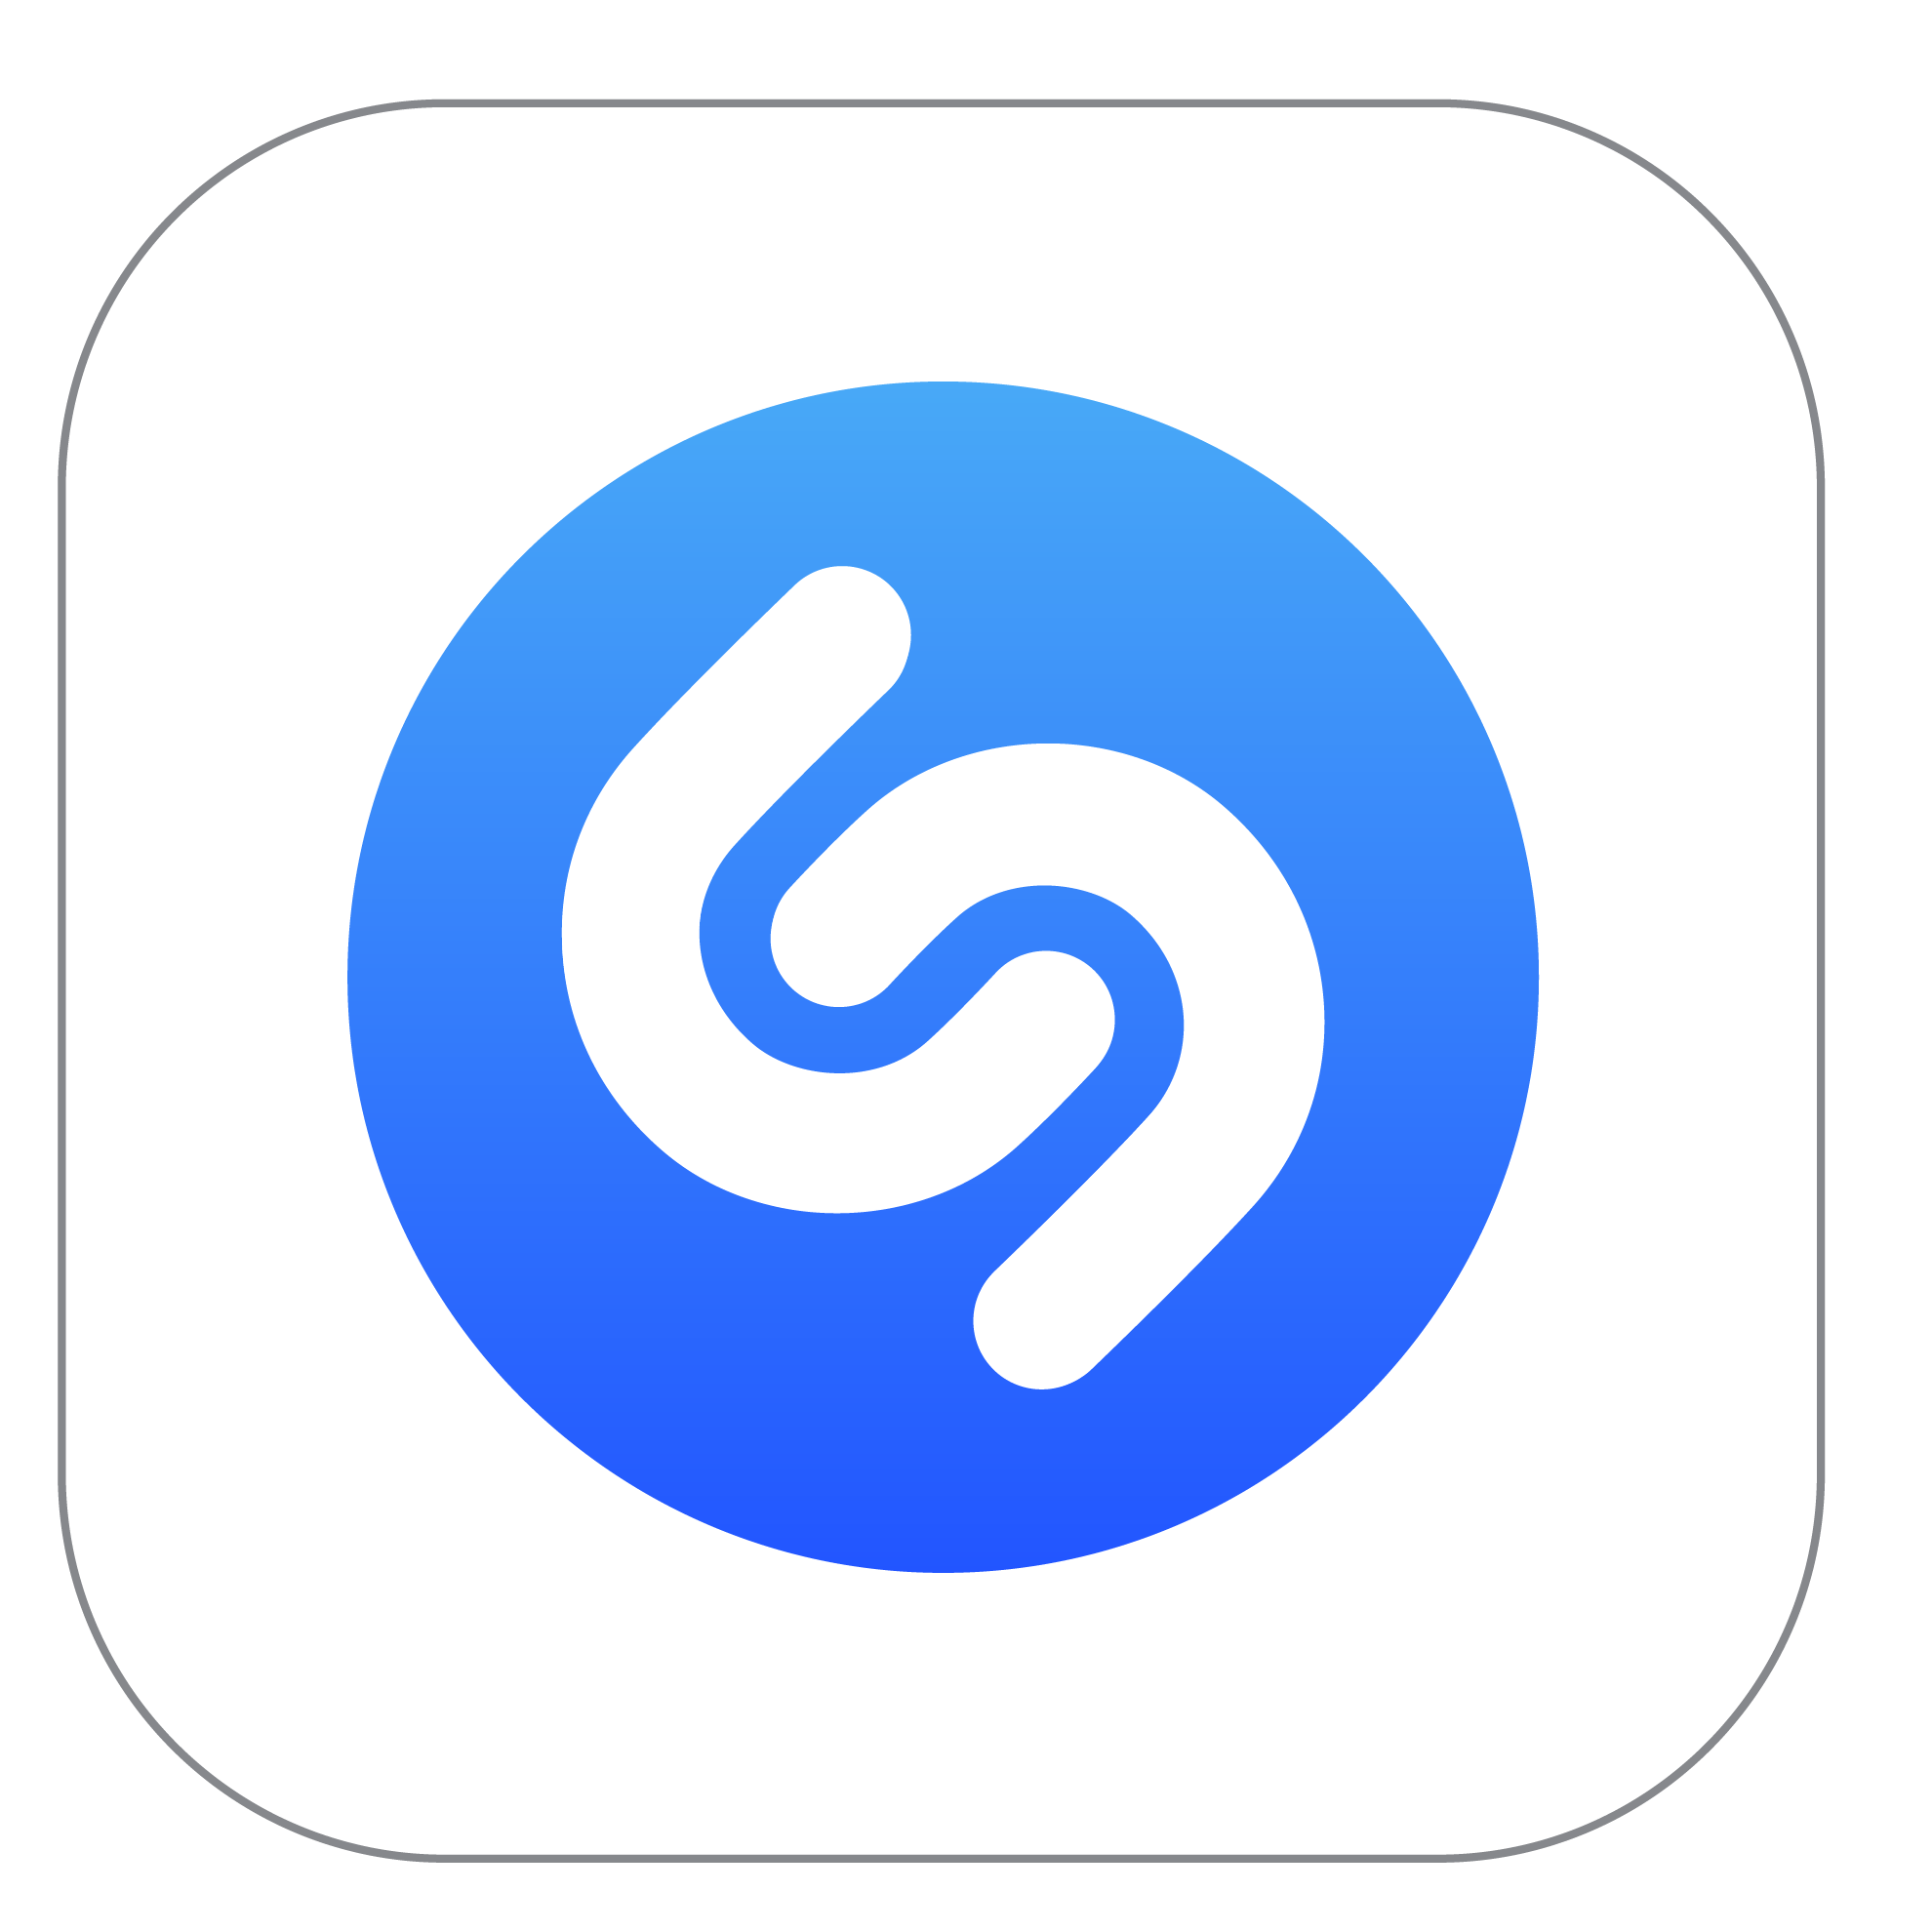 Disfruta de los Planes de Telefonía Celular con tu App favorita de música Shazam Apple